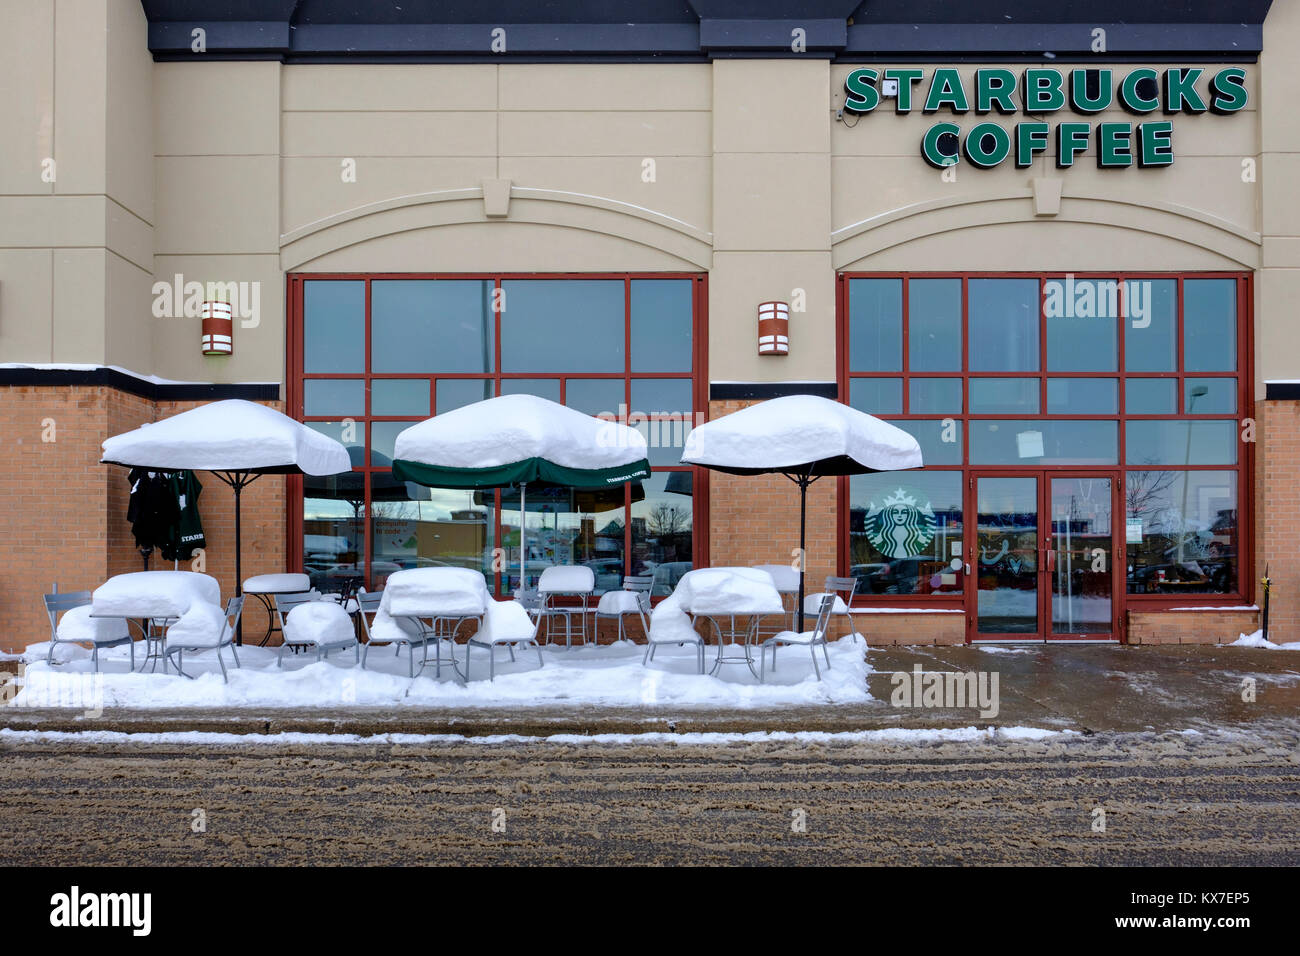 Café Starbucks vides trottoir patio tables, chaises, et parasols couverts par la neige fraîche, scène d'hiver, London, Ontario, Canada Banque D'Images